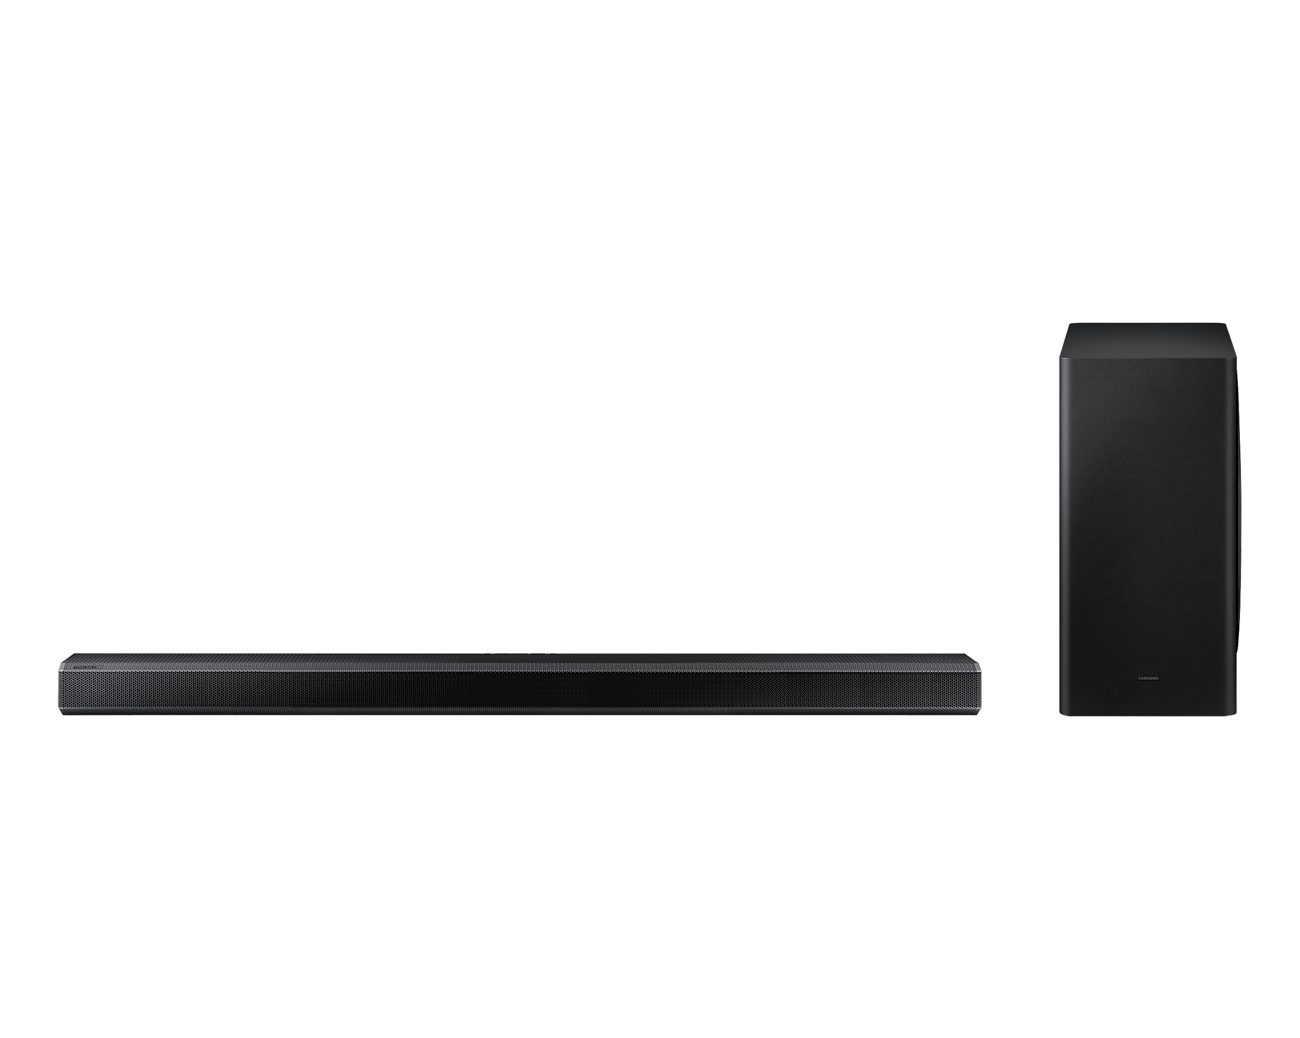 Samsung HW-Q800A 3.1.2ch Soundbar (2021) - Black